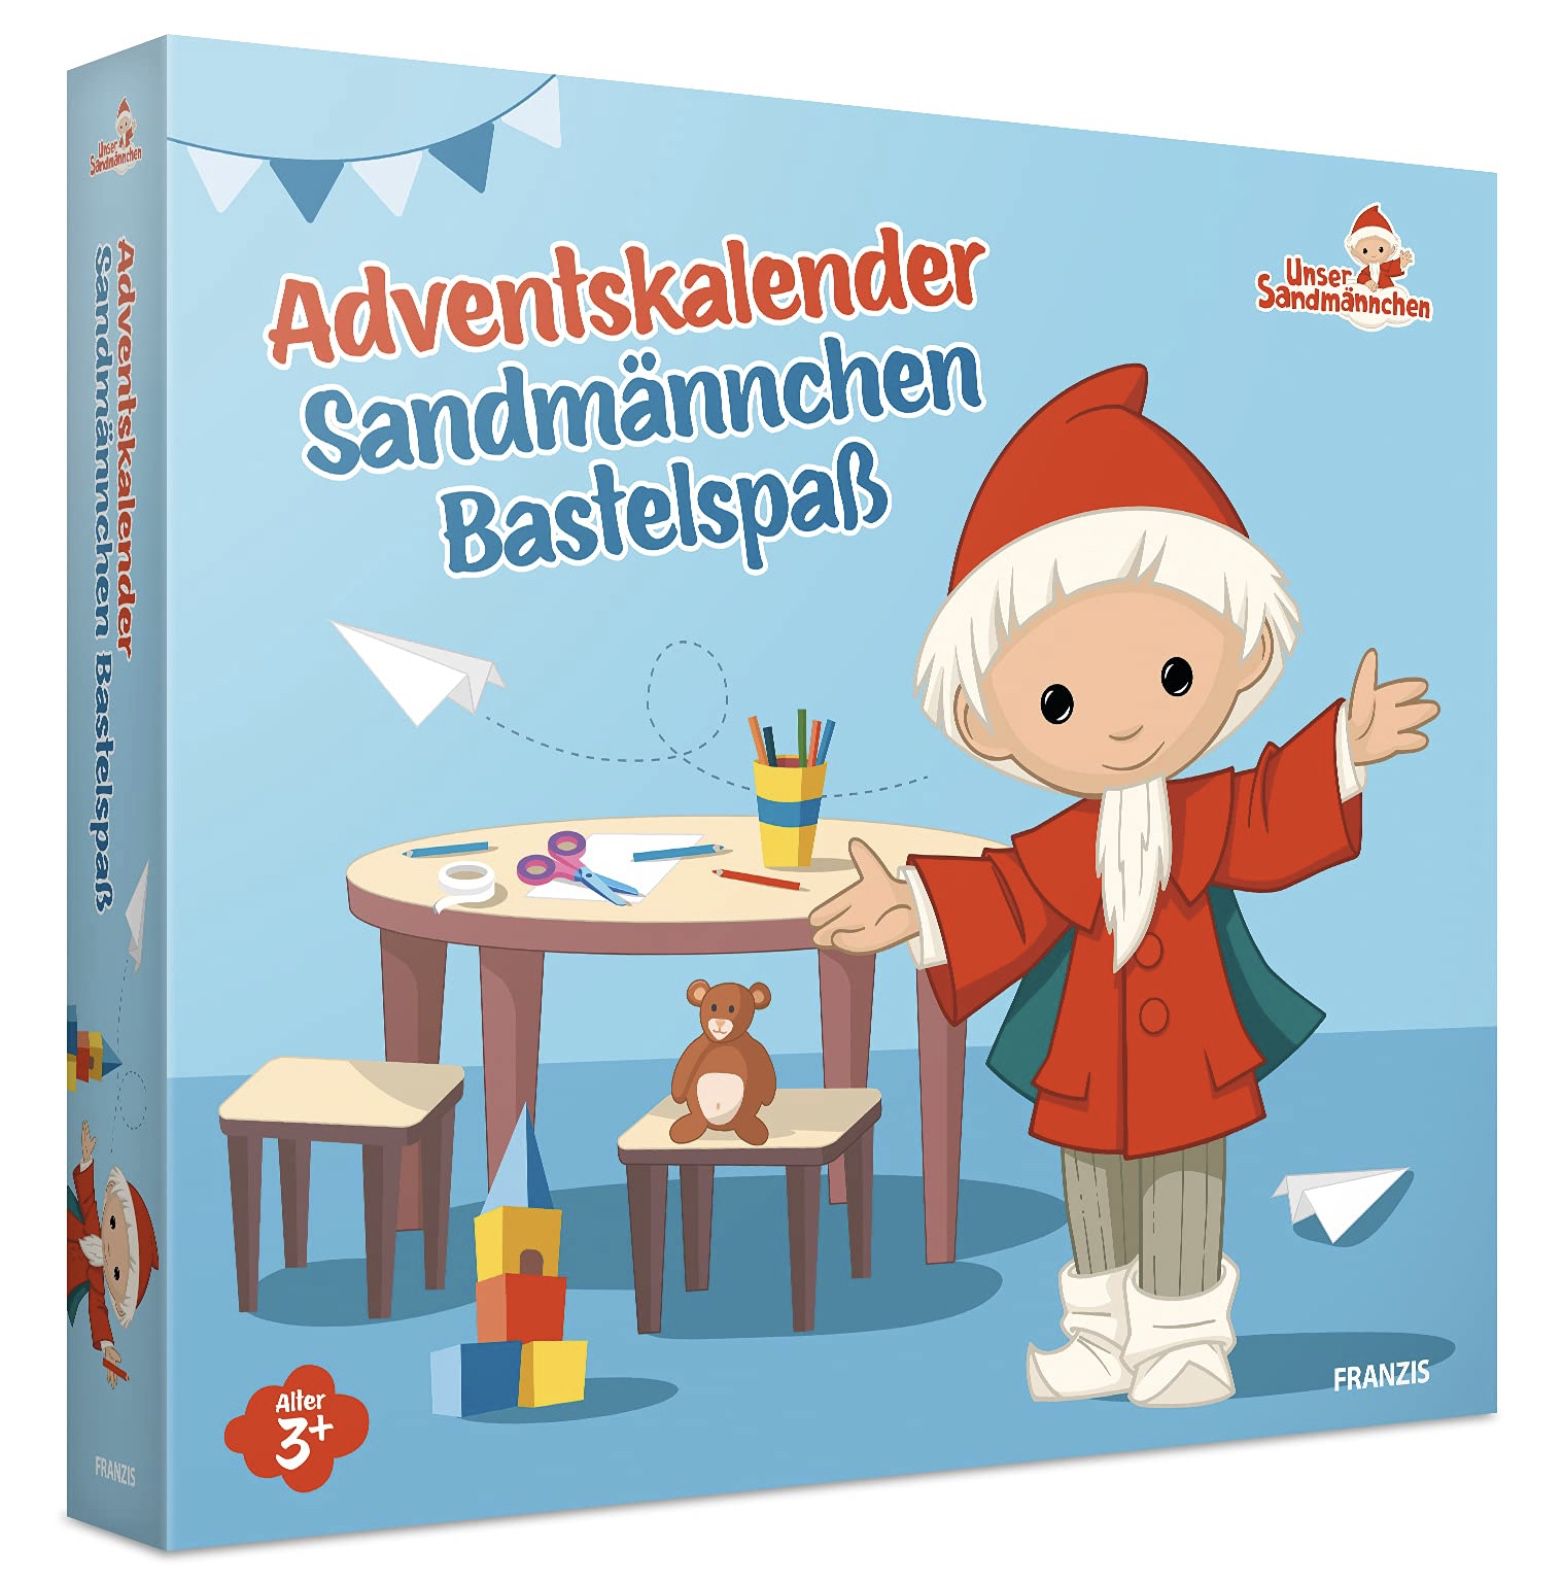 Franzis Sandmännchen Adventskalender mit Bastel-Sets für 4,81€ (statt 21€) &#8211; Prime